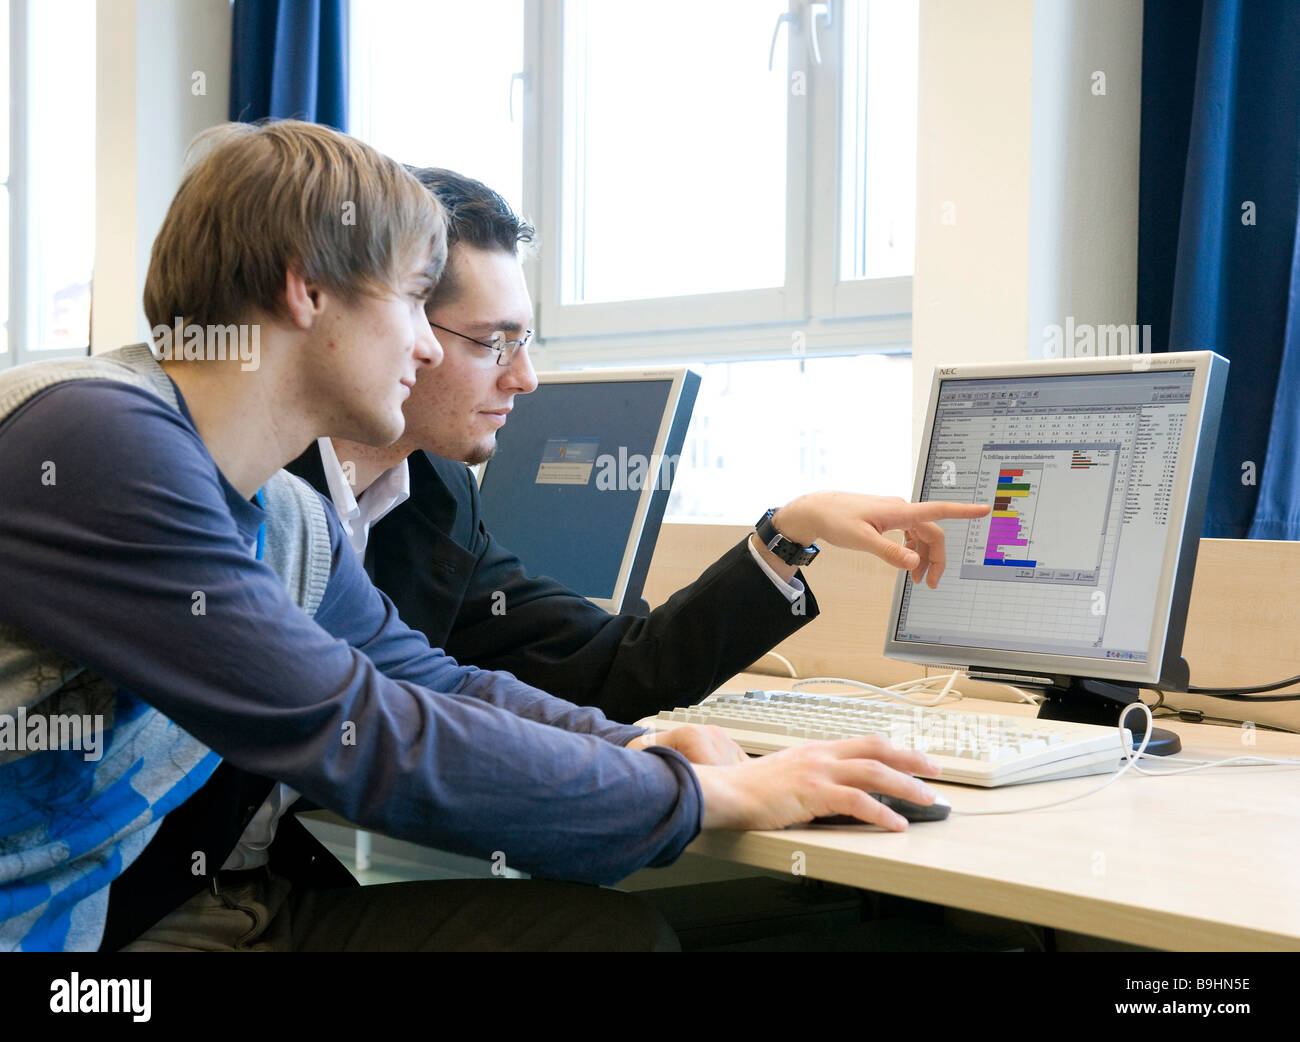 Les adolescents travaillant sur un ordinateur, l'utilisation des graphiques et tableaux Banque D'Images